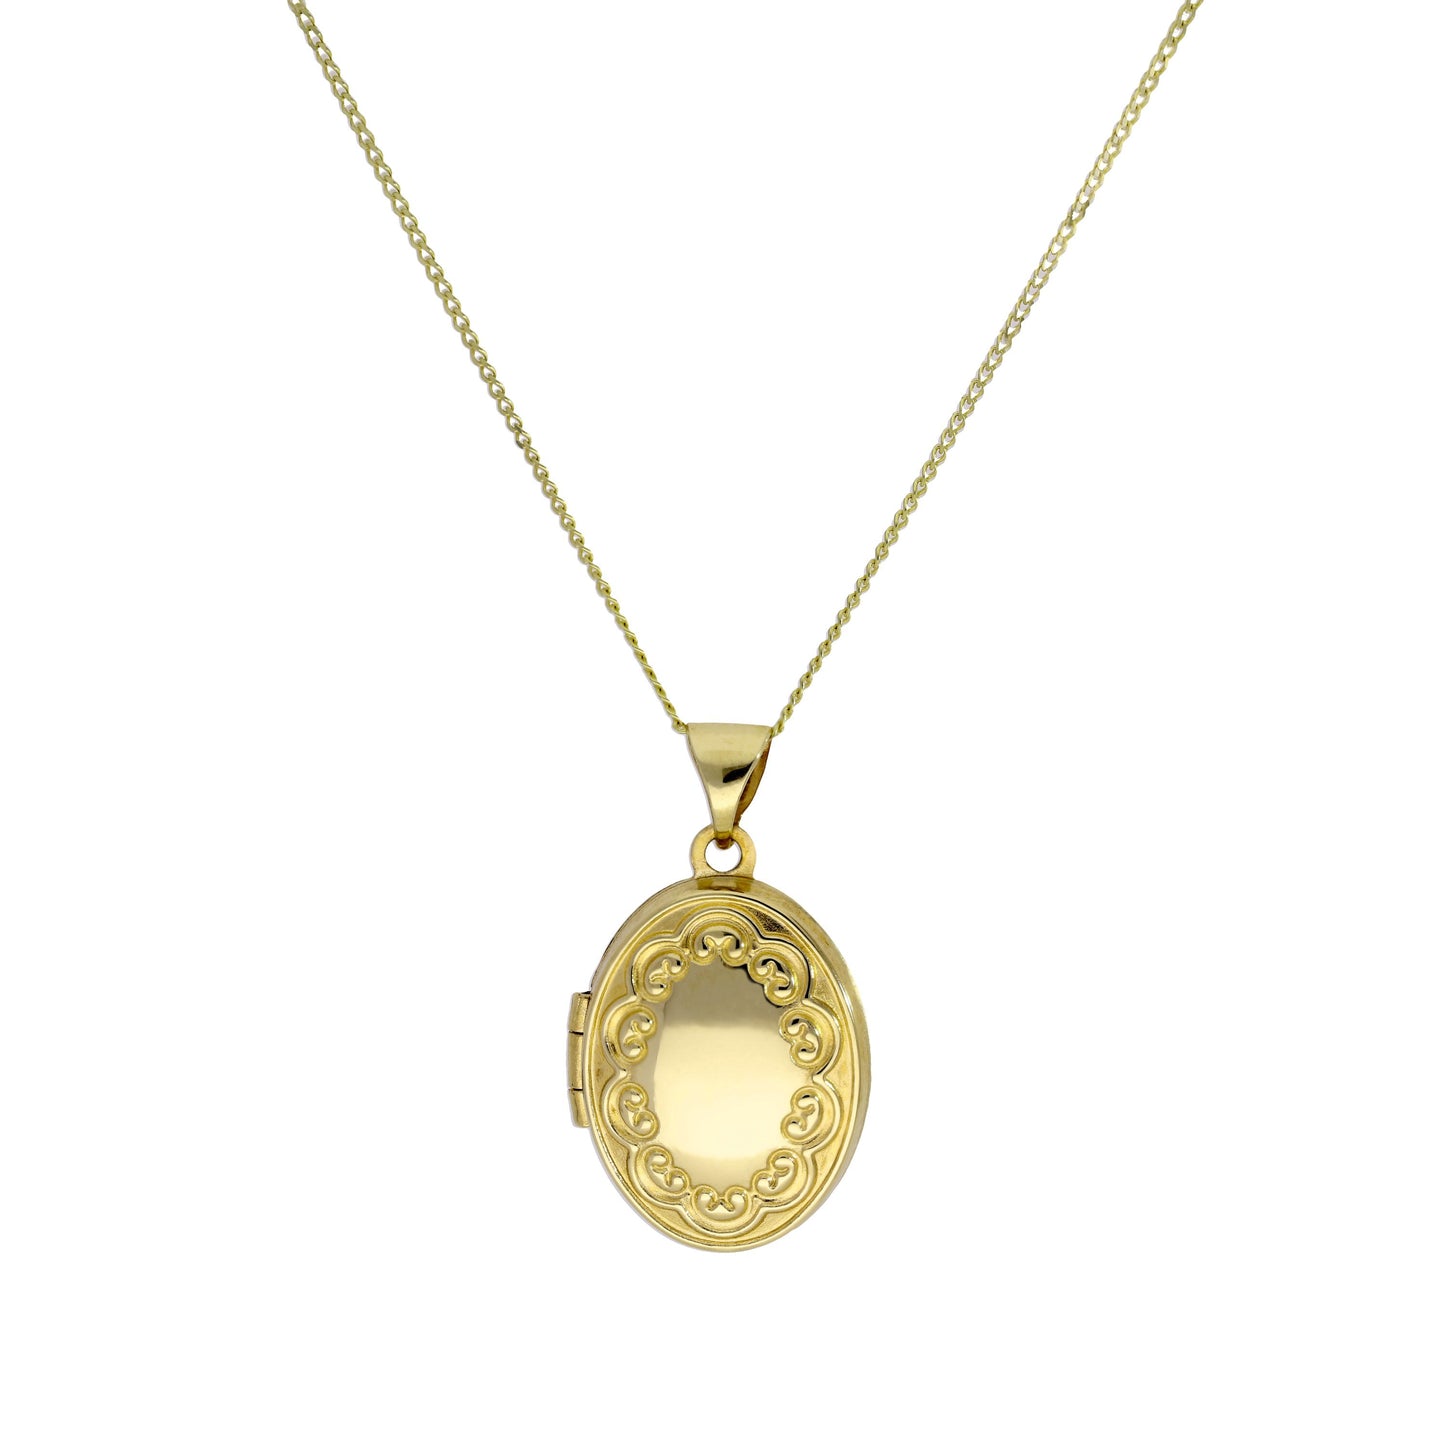 9 Karat Gold Oval Medaillon an Kette mit Blumen Muster an Kette 40,5 - 45,5cm